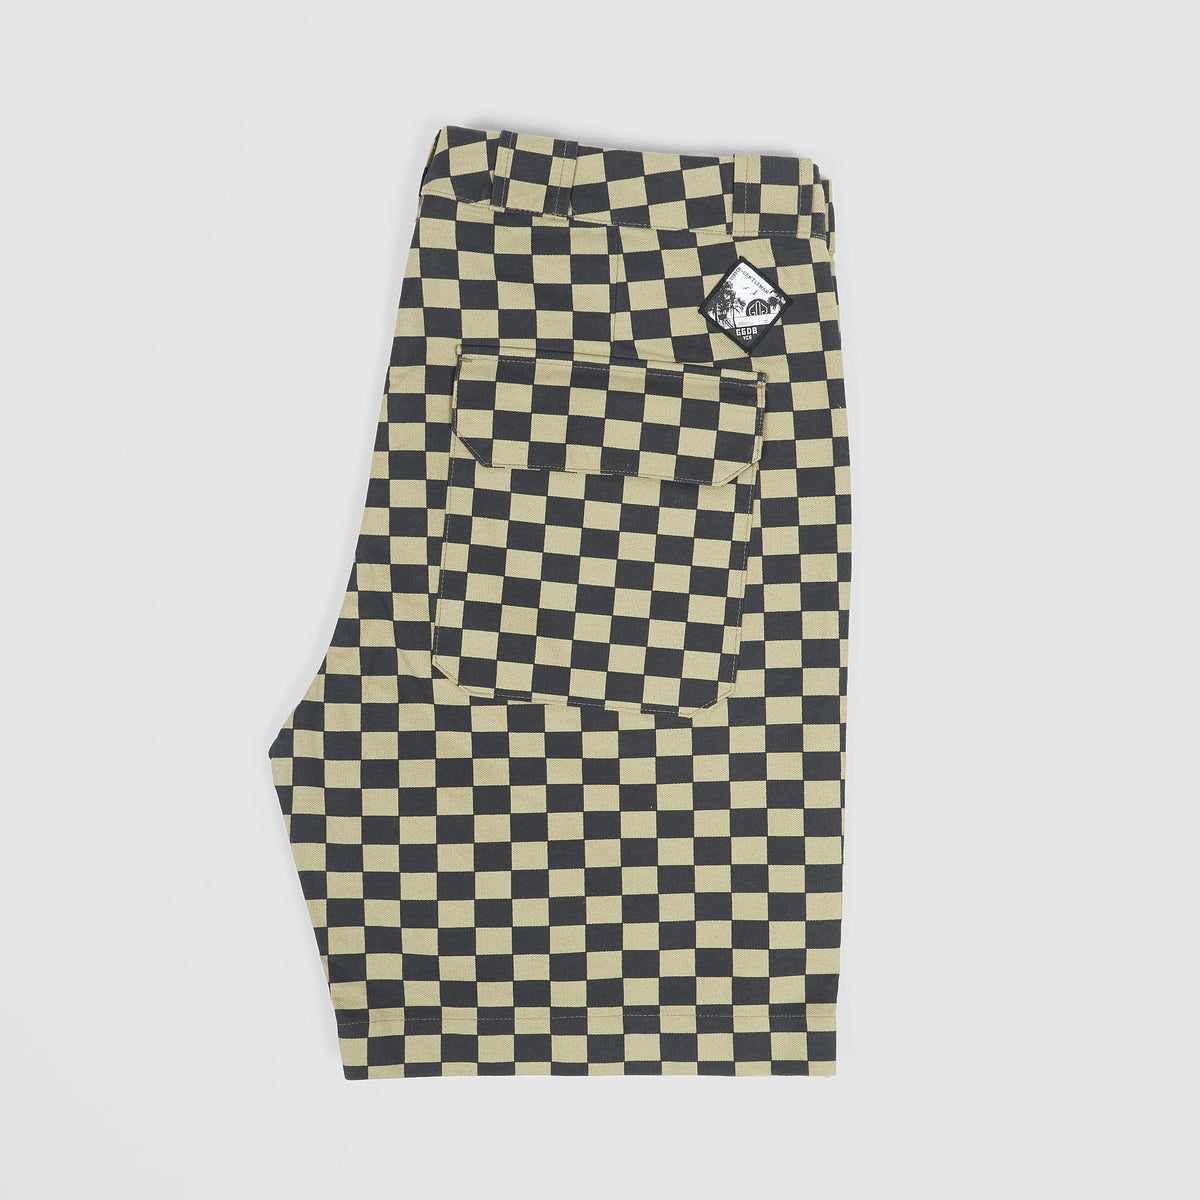 Golden Goose Checkered Bermuda Shorts